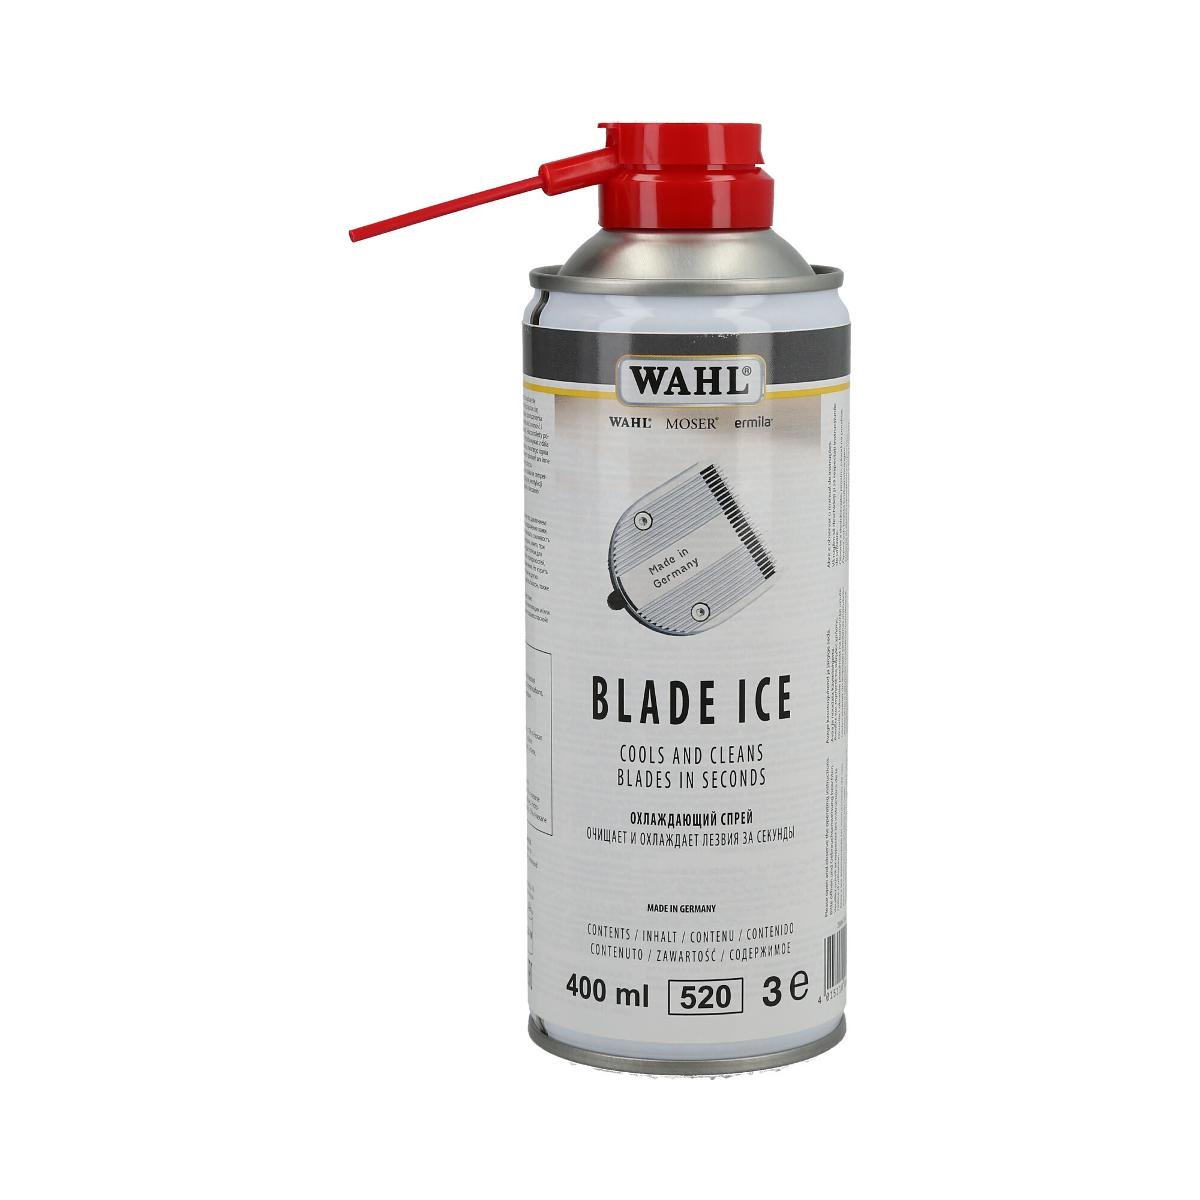 Wahl WAHL BLADE ICE Wielozadaniowy Preparat w sprayu do pielęgnacji ostrzy 0000050657